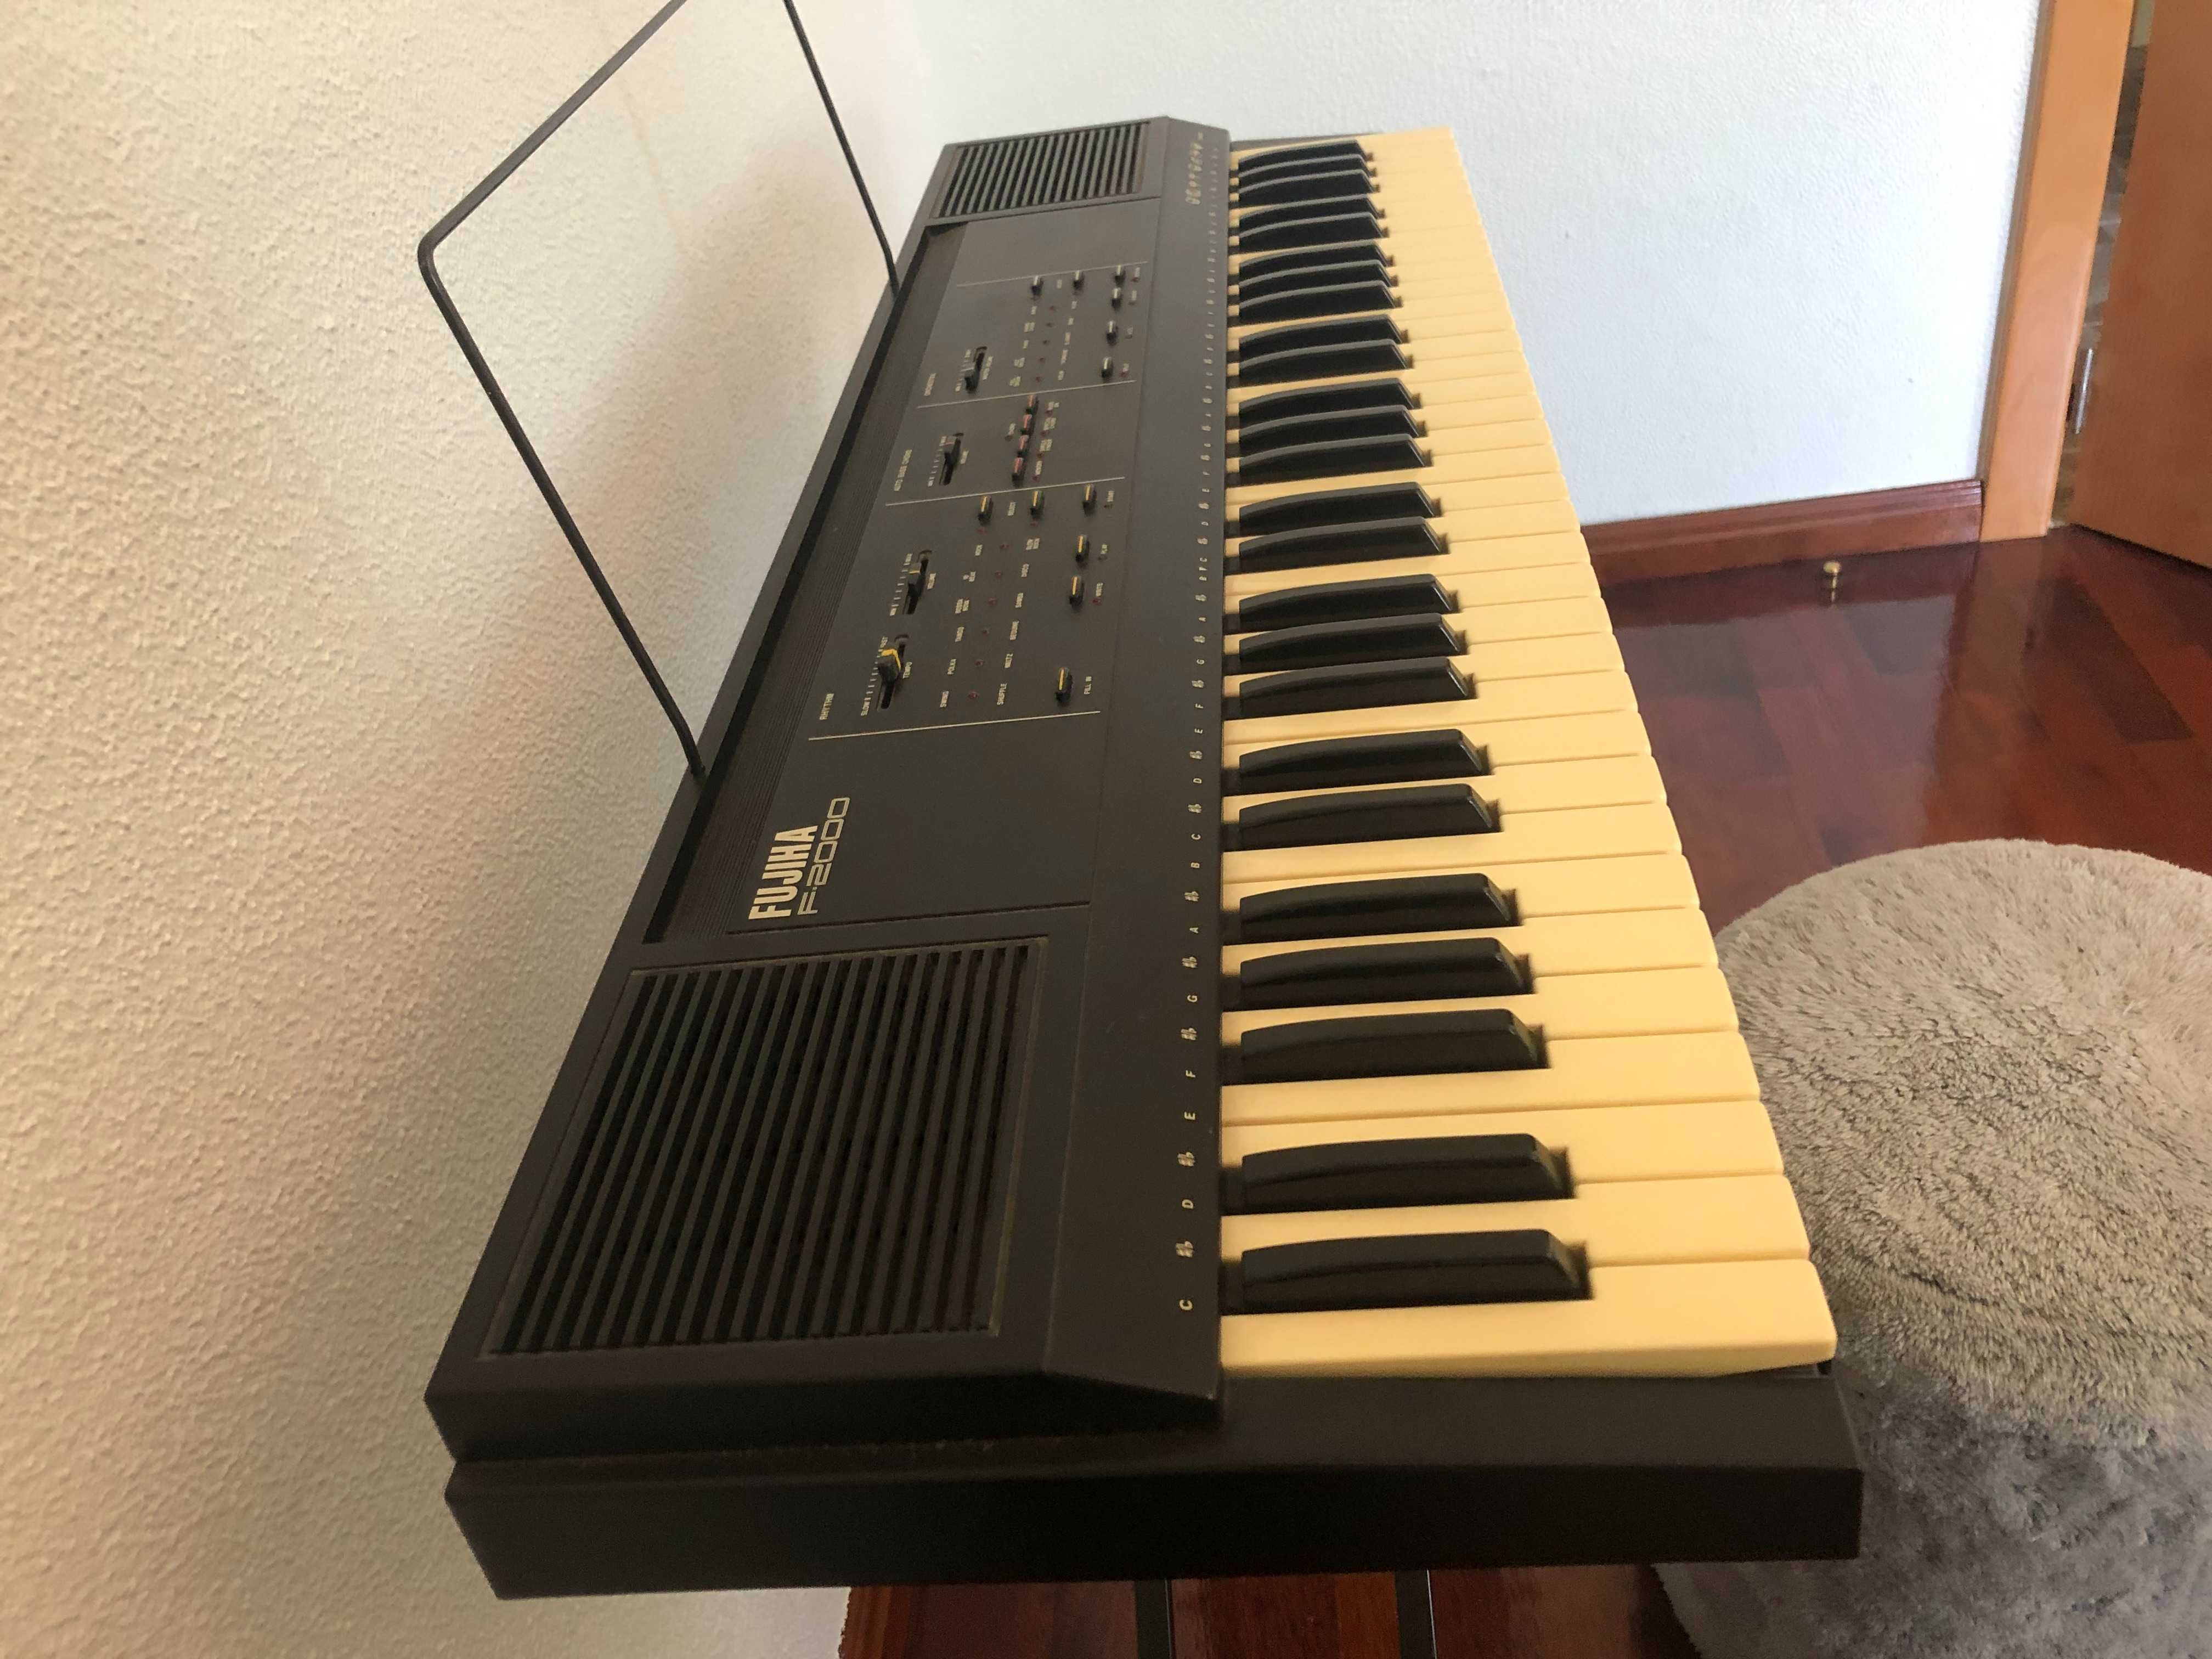 Órgão sintetizador Fujiha F-2000